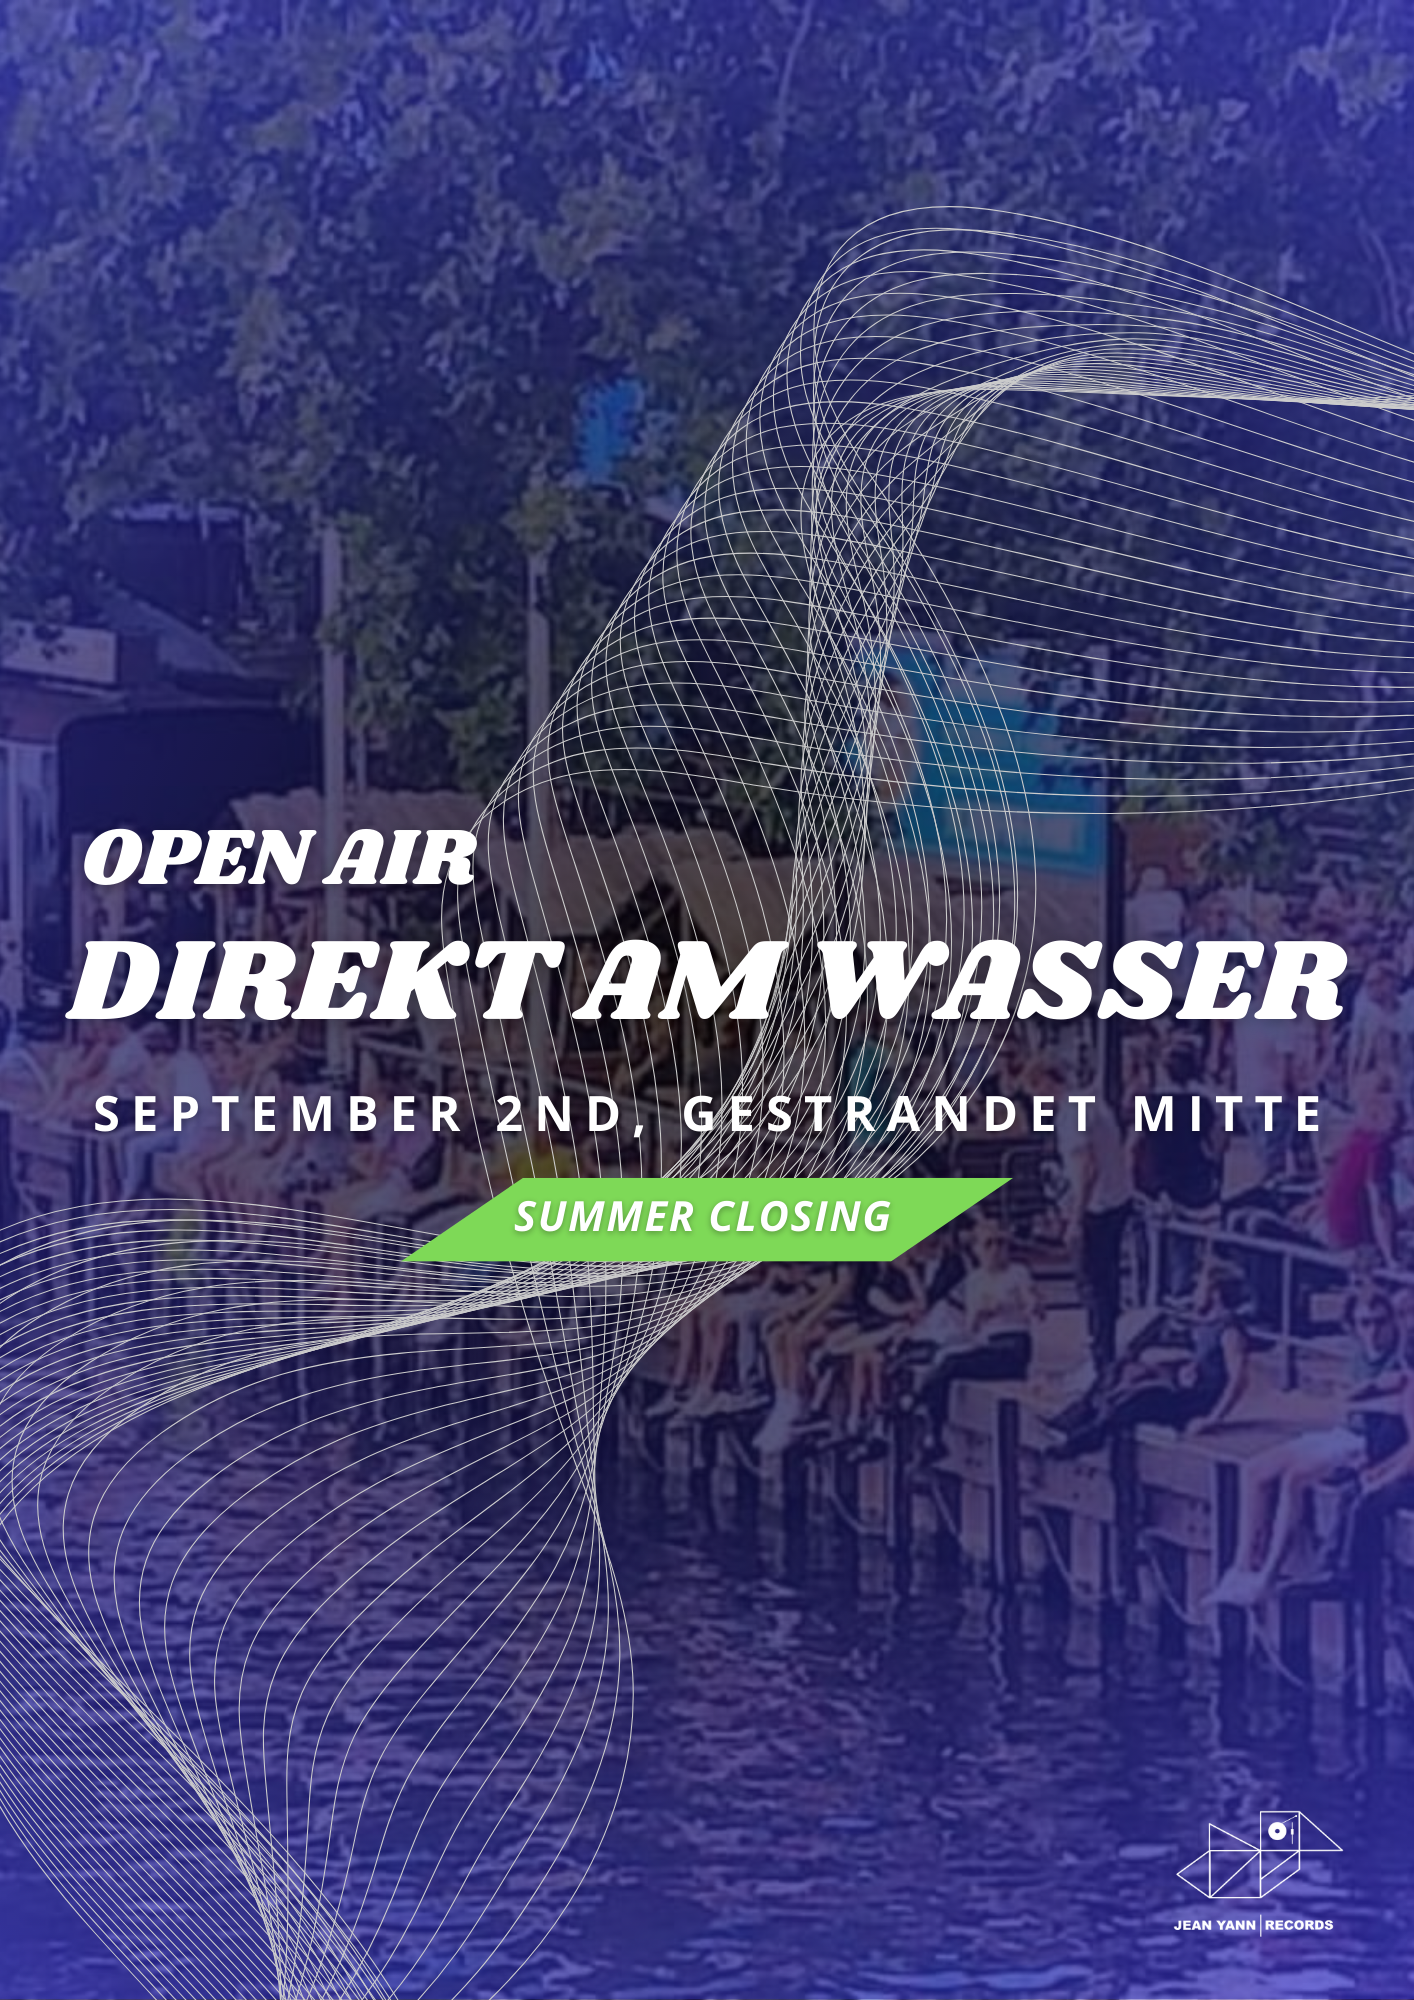 OPEN AIR DIREKT AM WASSER - Jean Yann Records invites What a Playground (Summer Closing) - Página frontal